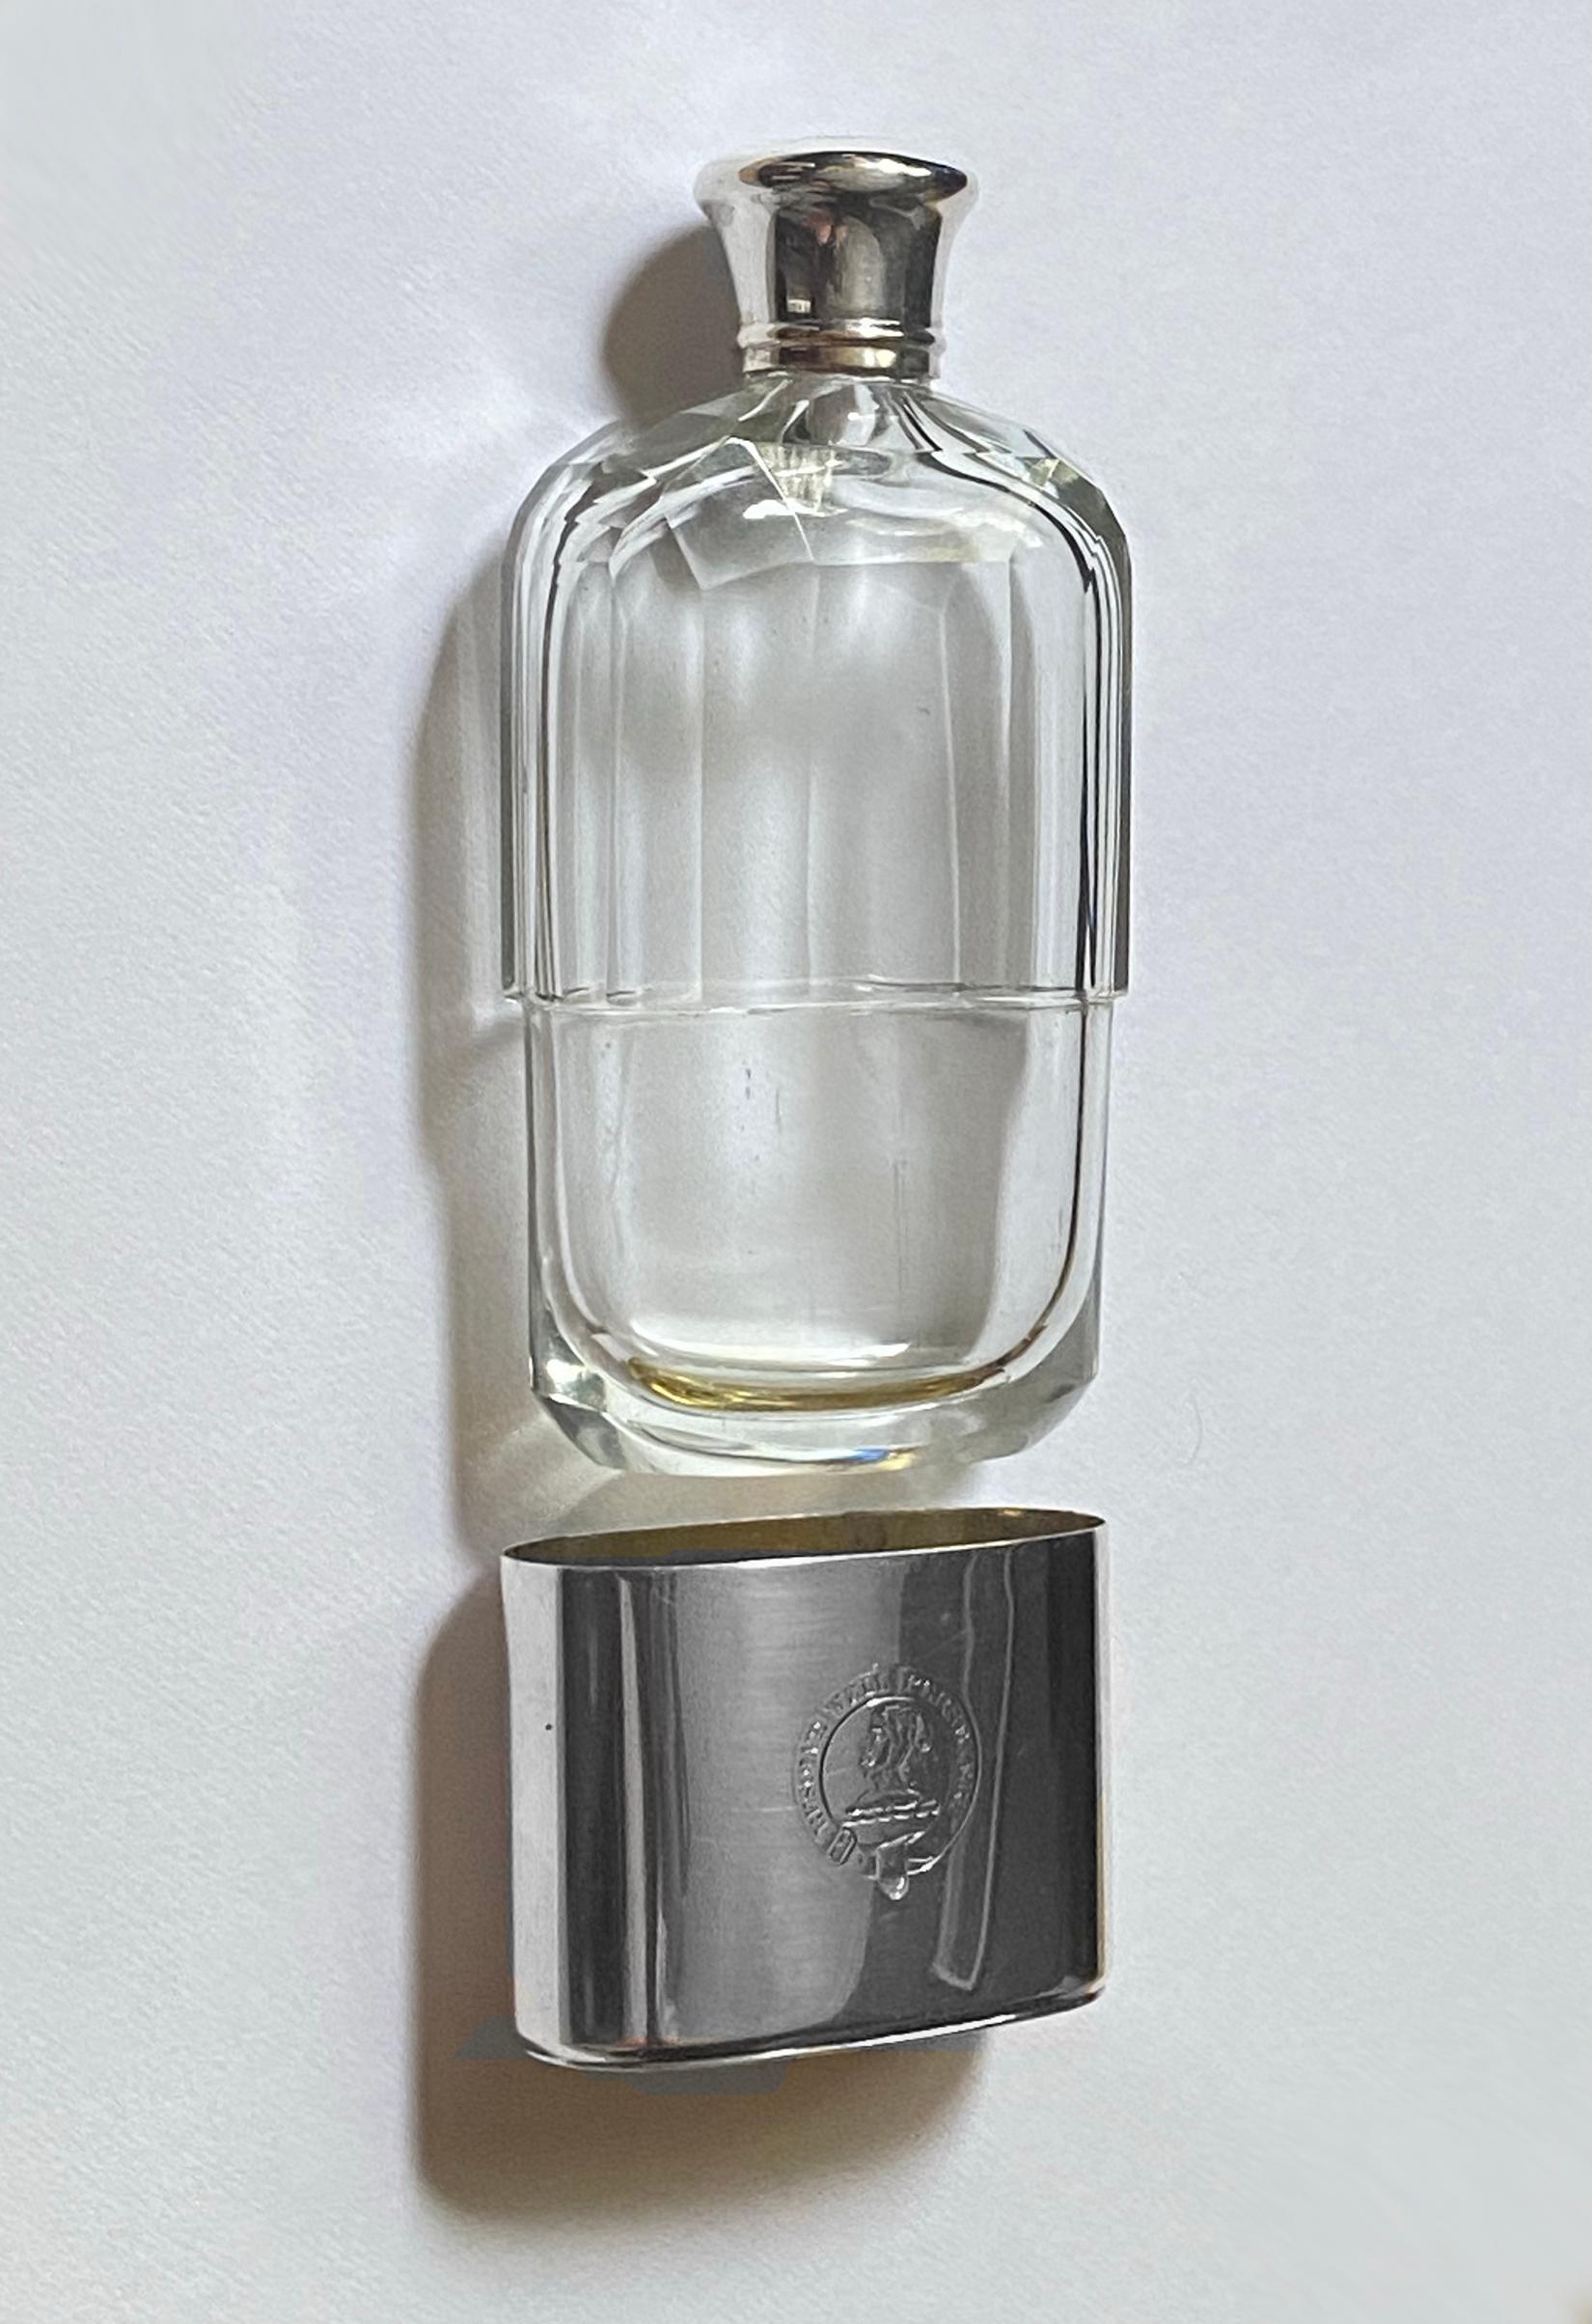 London 1912/13 Asprey & Co Ltd. Asprey George V Silver Gilt & Cut Glass Hip Flask 